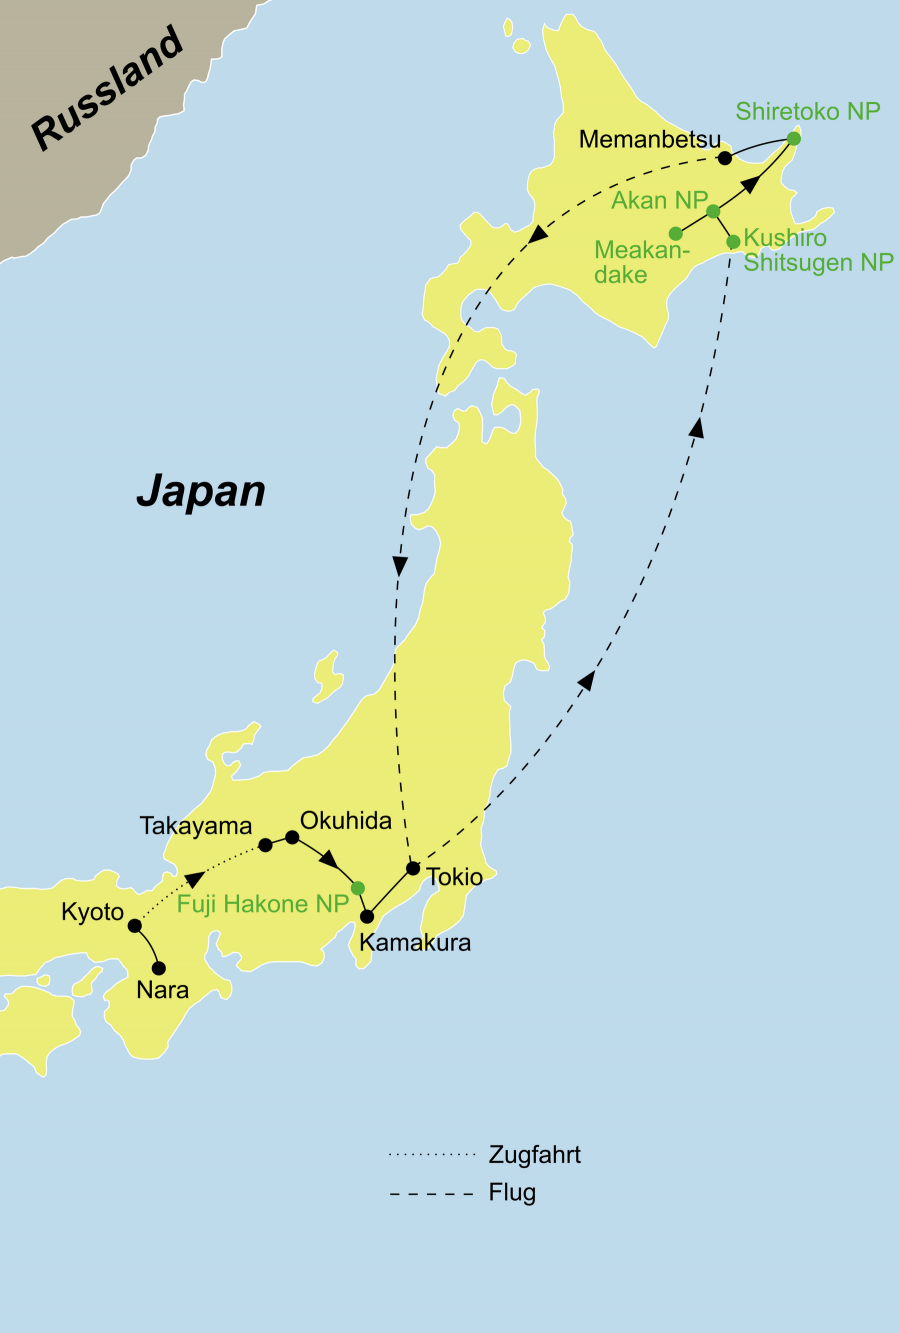 Der Reiseverlauf zu unserer Japan Reise - Japan erleben startet in Kyoto und endet in Tokyo.